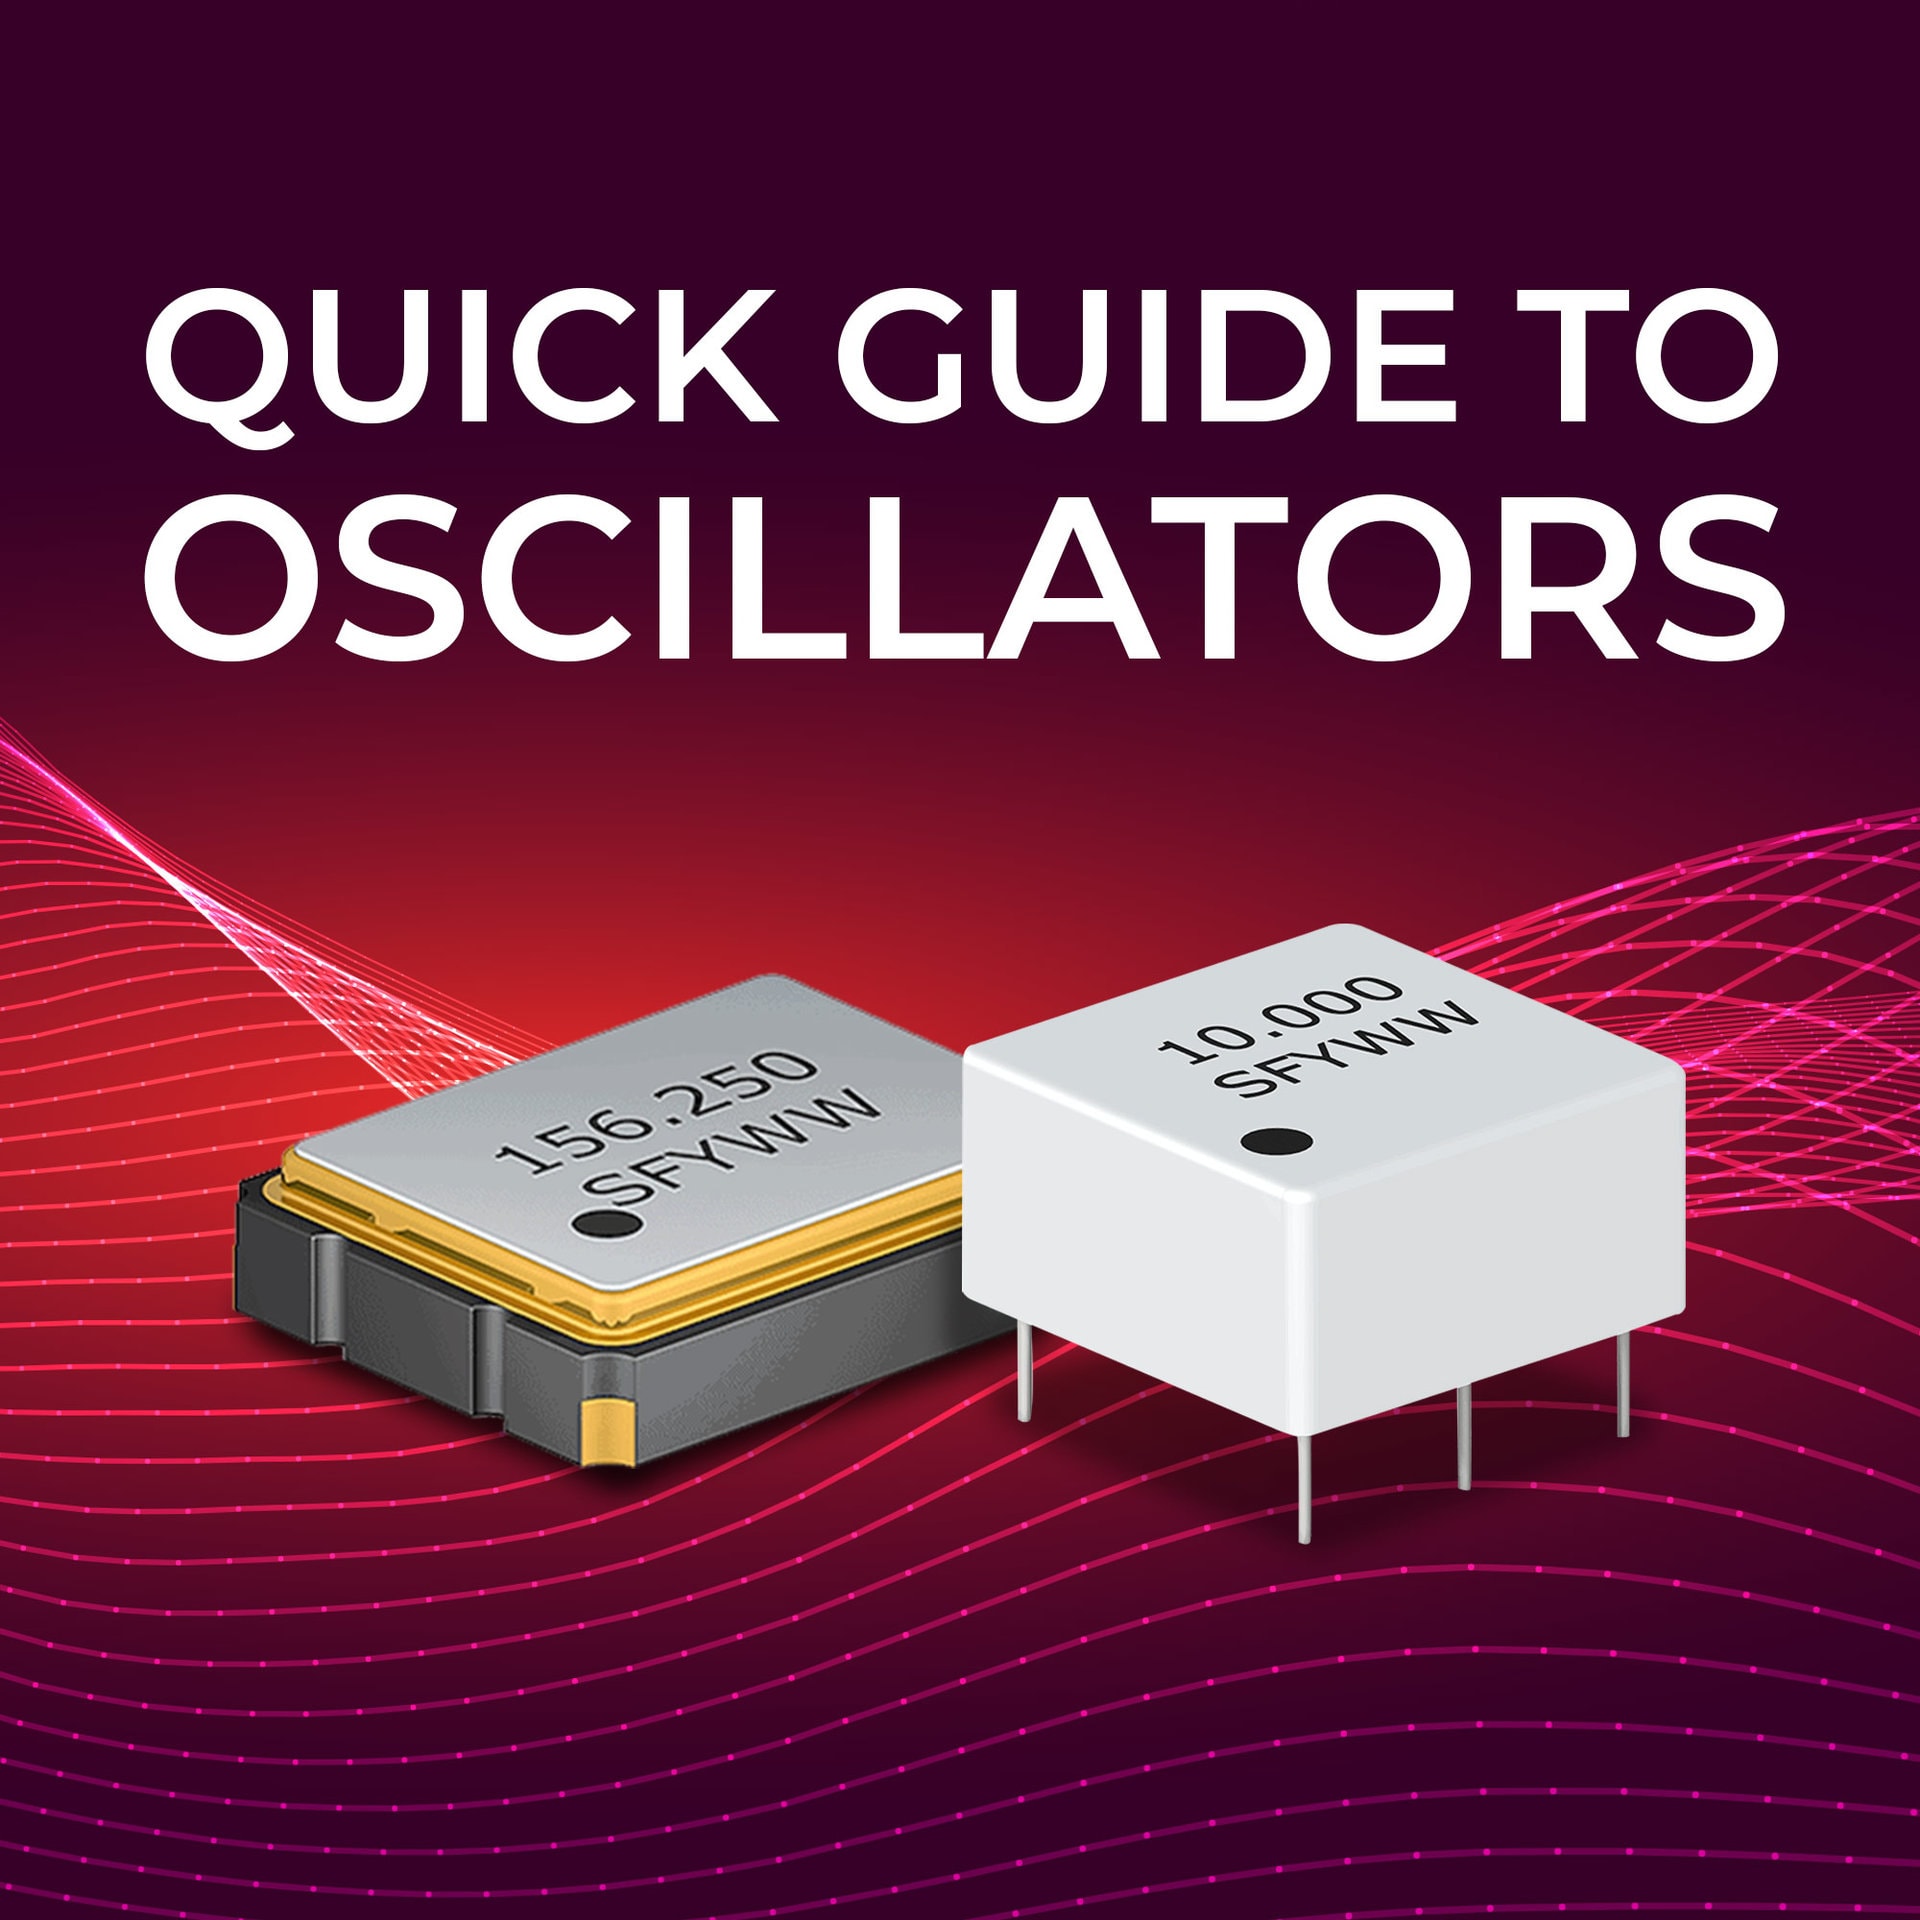 Quick Guide to Oscillators